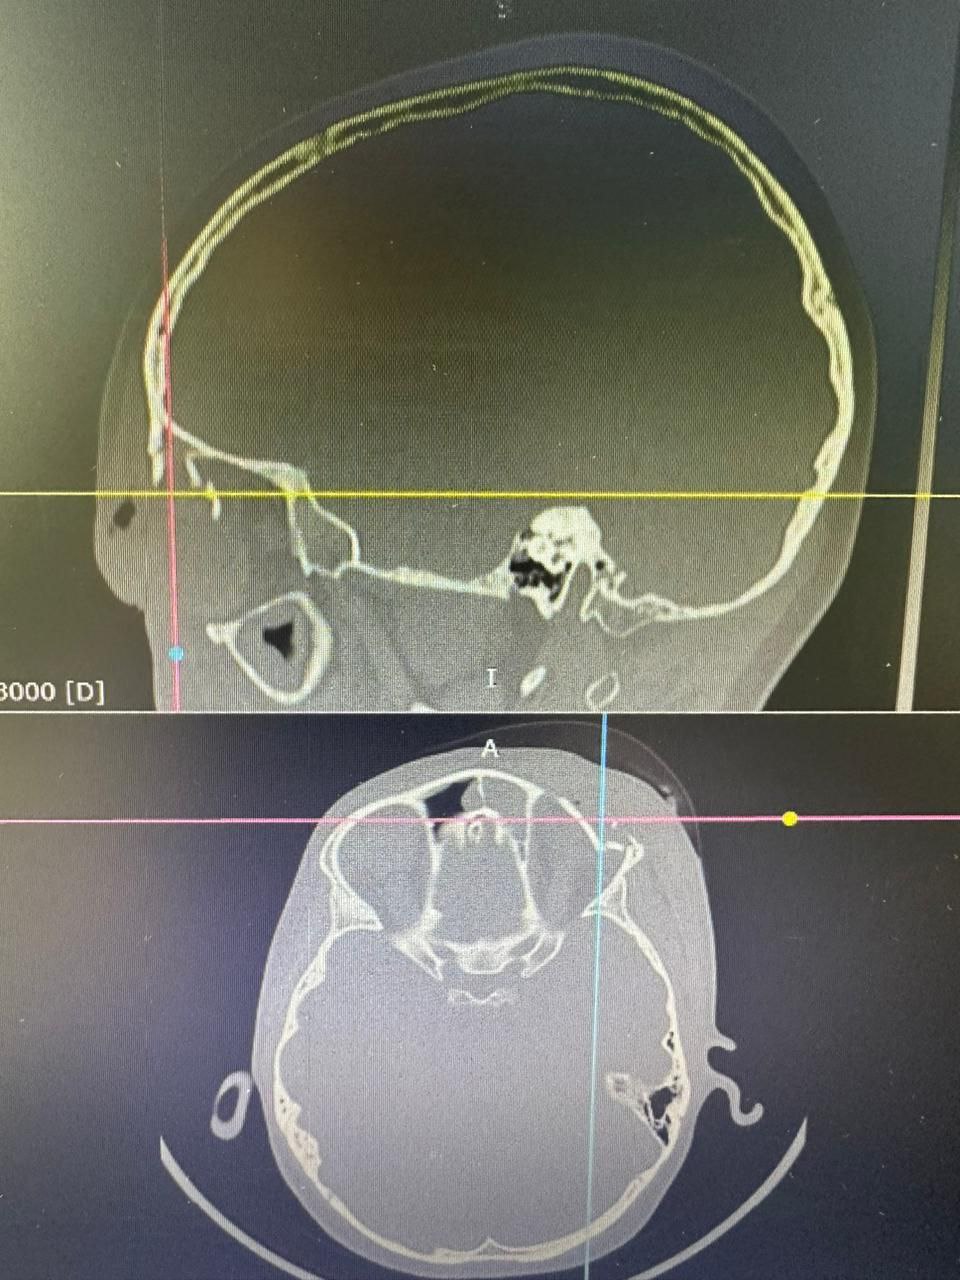 В приемно-диагностическое отделение ГАУЗ «Детская республиканская клиническая больница» г. Улан-Удэ доставили девятилетнего мальчика, которого конь лягнул в лоб, чуть выше глаза. Ребенок предъявлял жалобы на двоение в глазах и головную боль. На МРТ выявили перелом костей черепа в надглазничной области со смещением глазного яблока. Существовал высокий риск перфорации, поскольку осколки верхней стенки орбиты находились очень близко к глазу, один из отломков — в миллиметре.